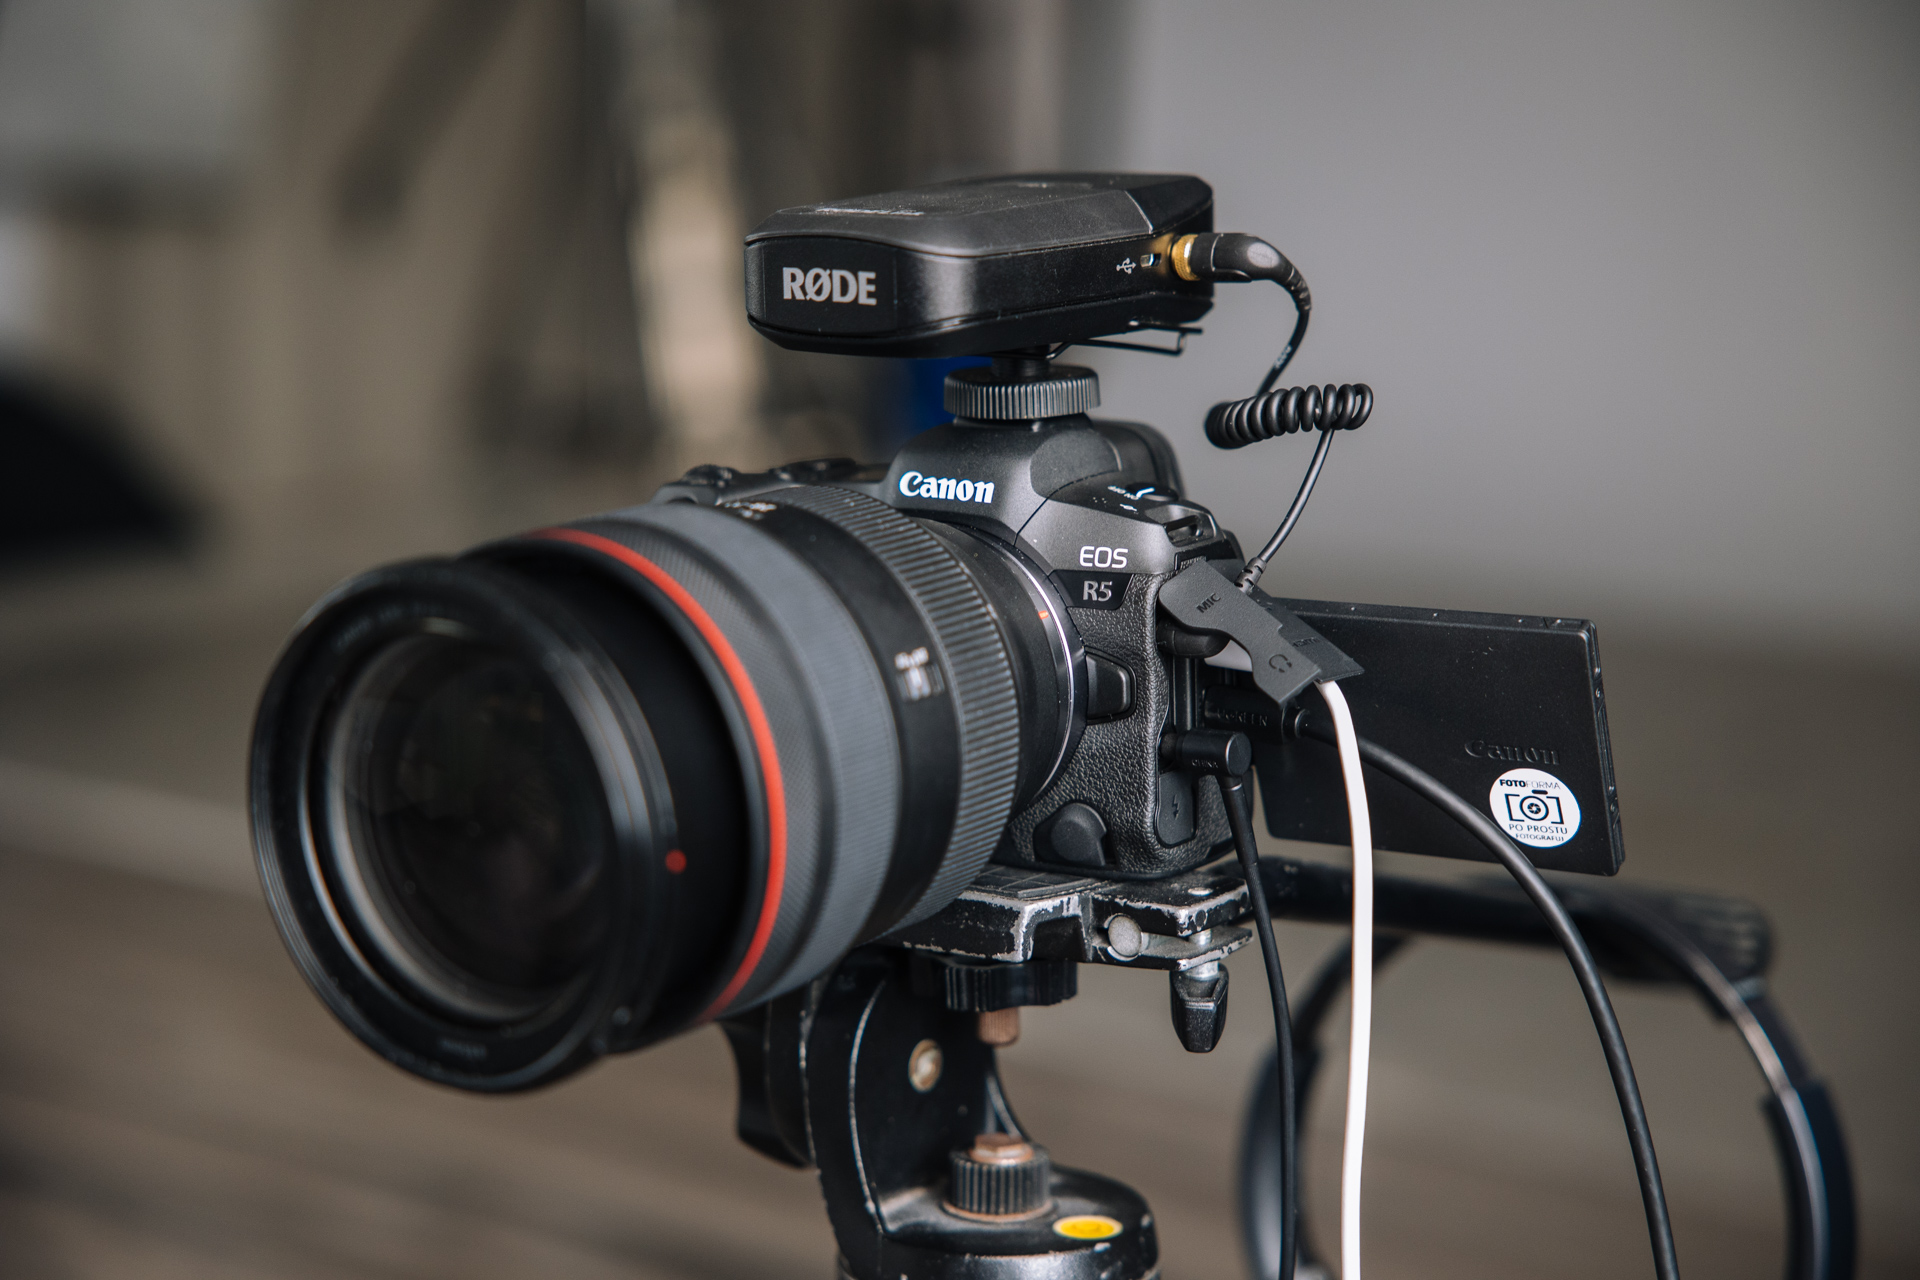 Canon EOS R5 potrafi nagrywać wideo w rozdzielczości aż 8K. Fot. KB.